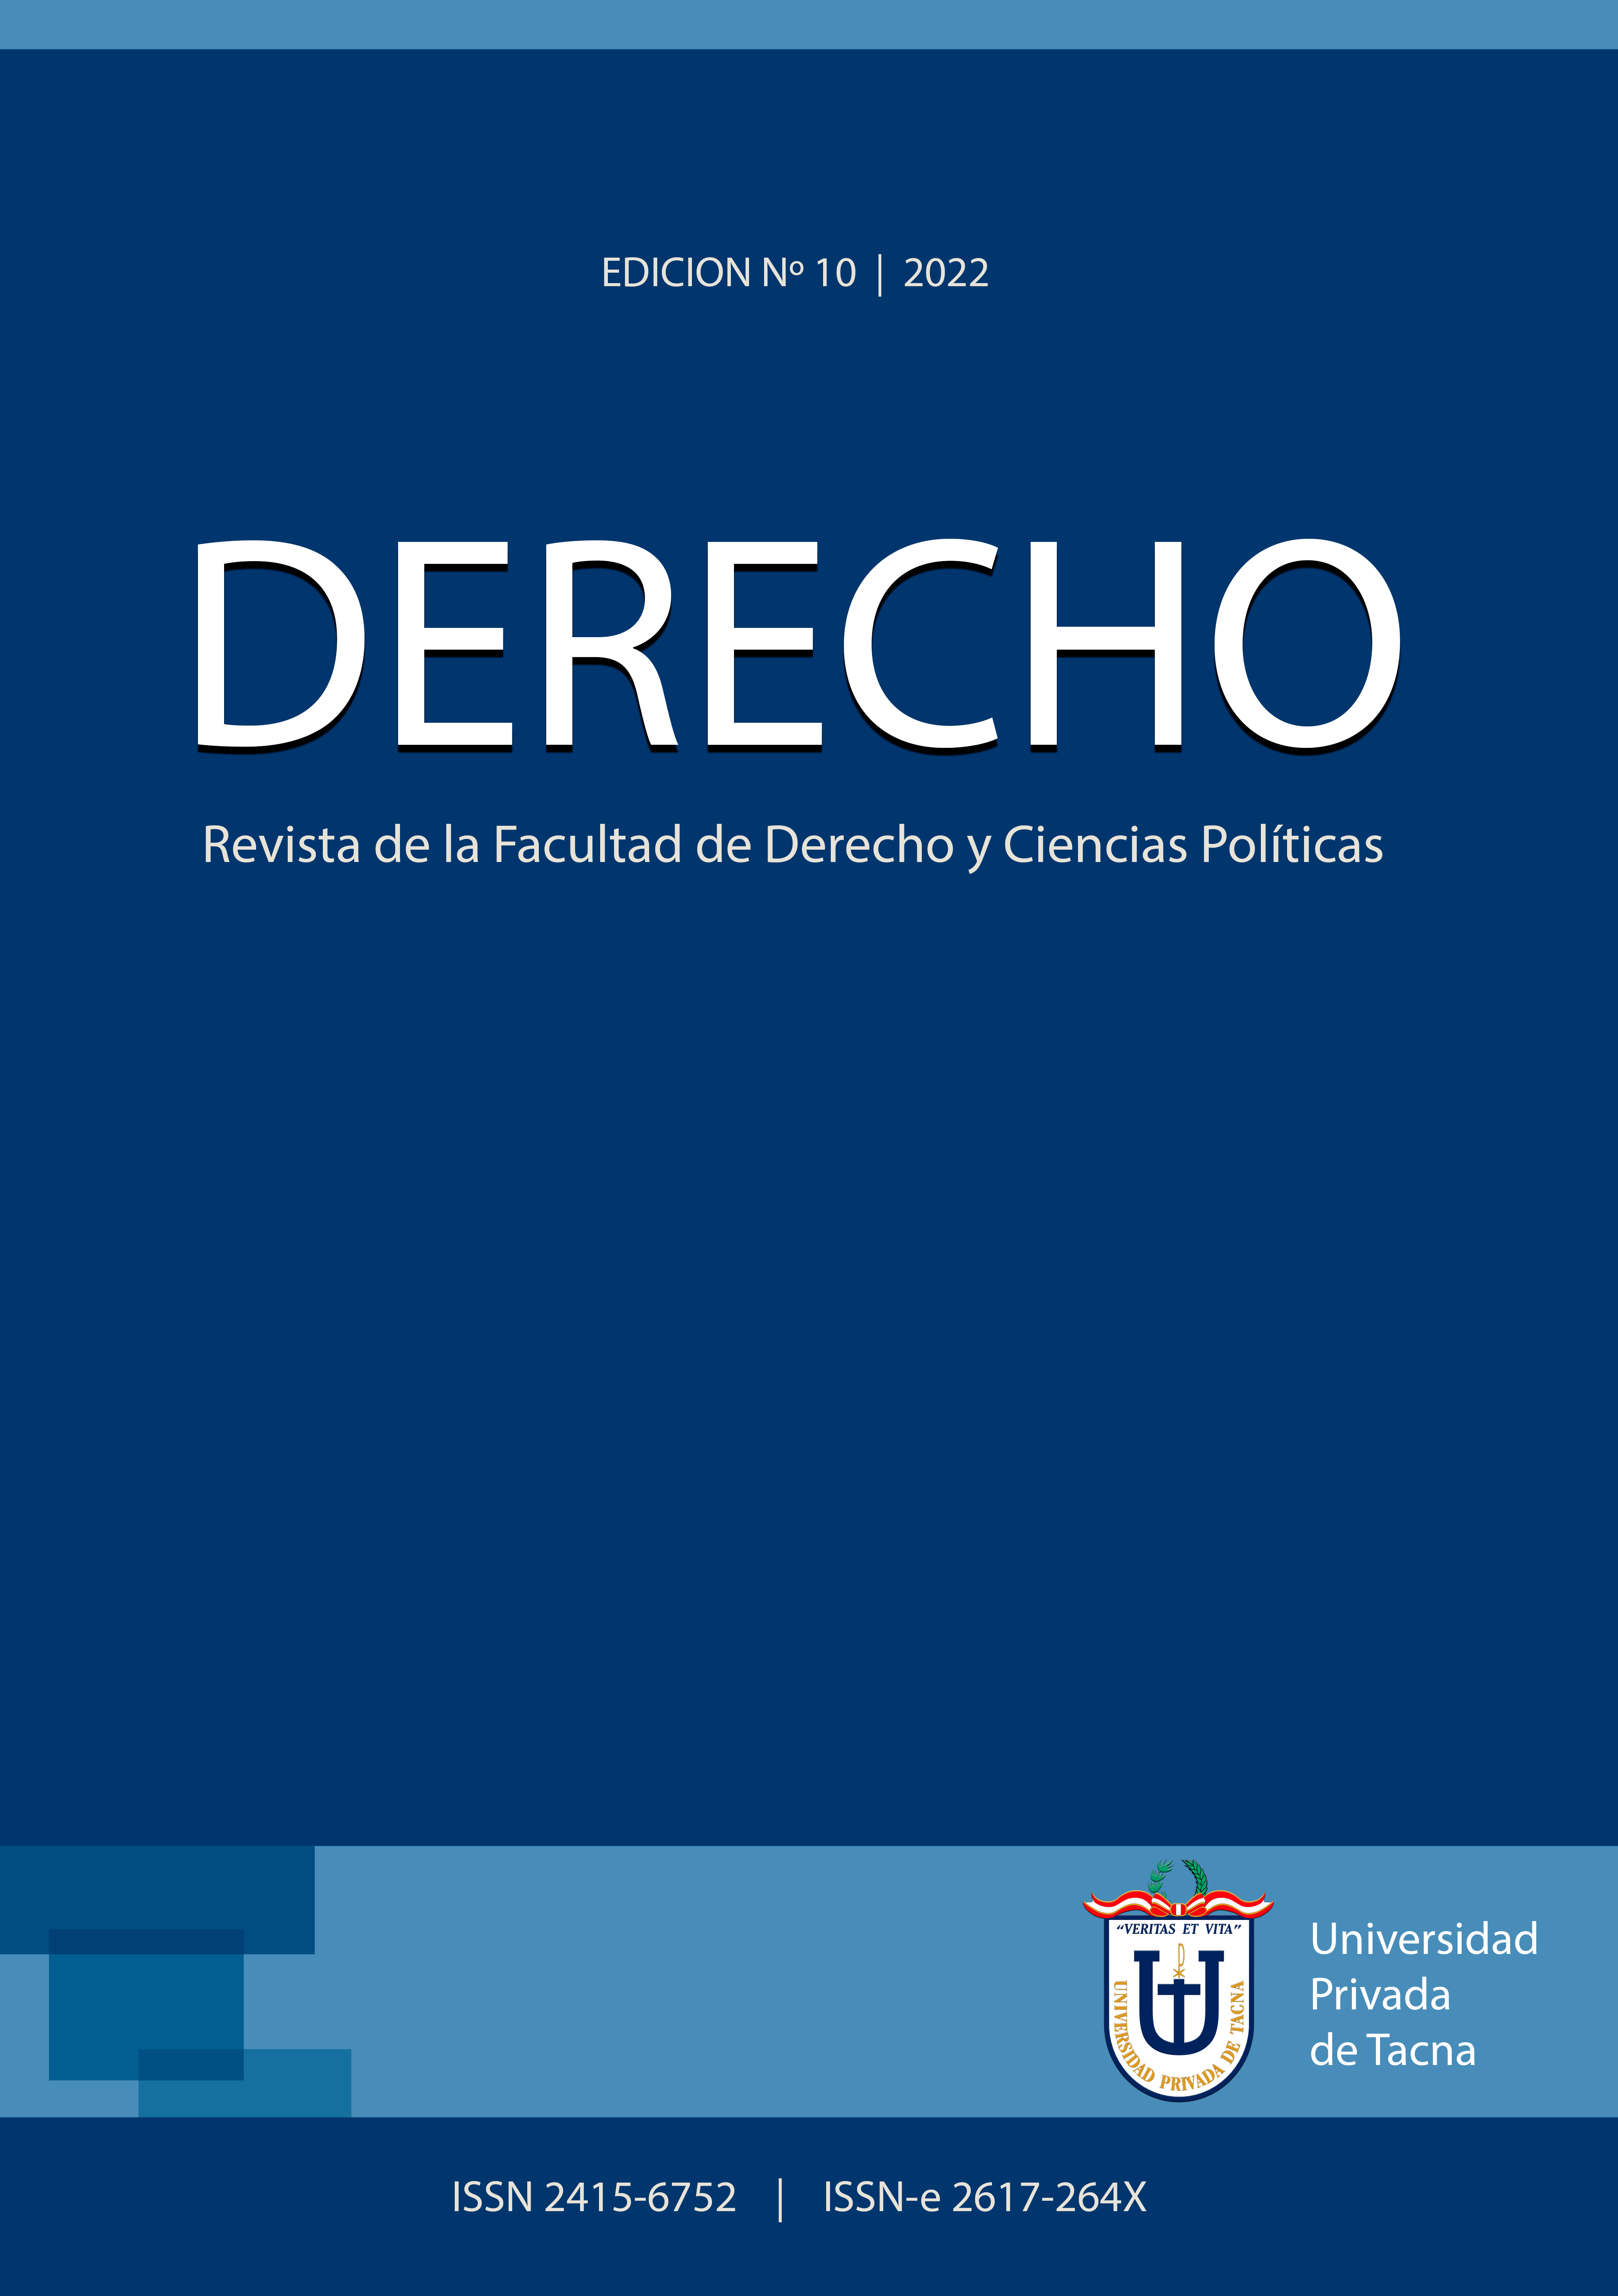 					View Vol. 10 No. 10 (2022): DERECHO: Revista de la Facultad de Derecho y Ciencias Políticas
				